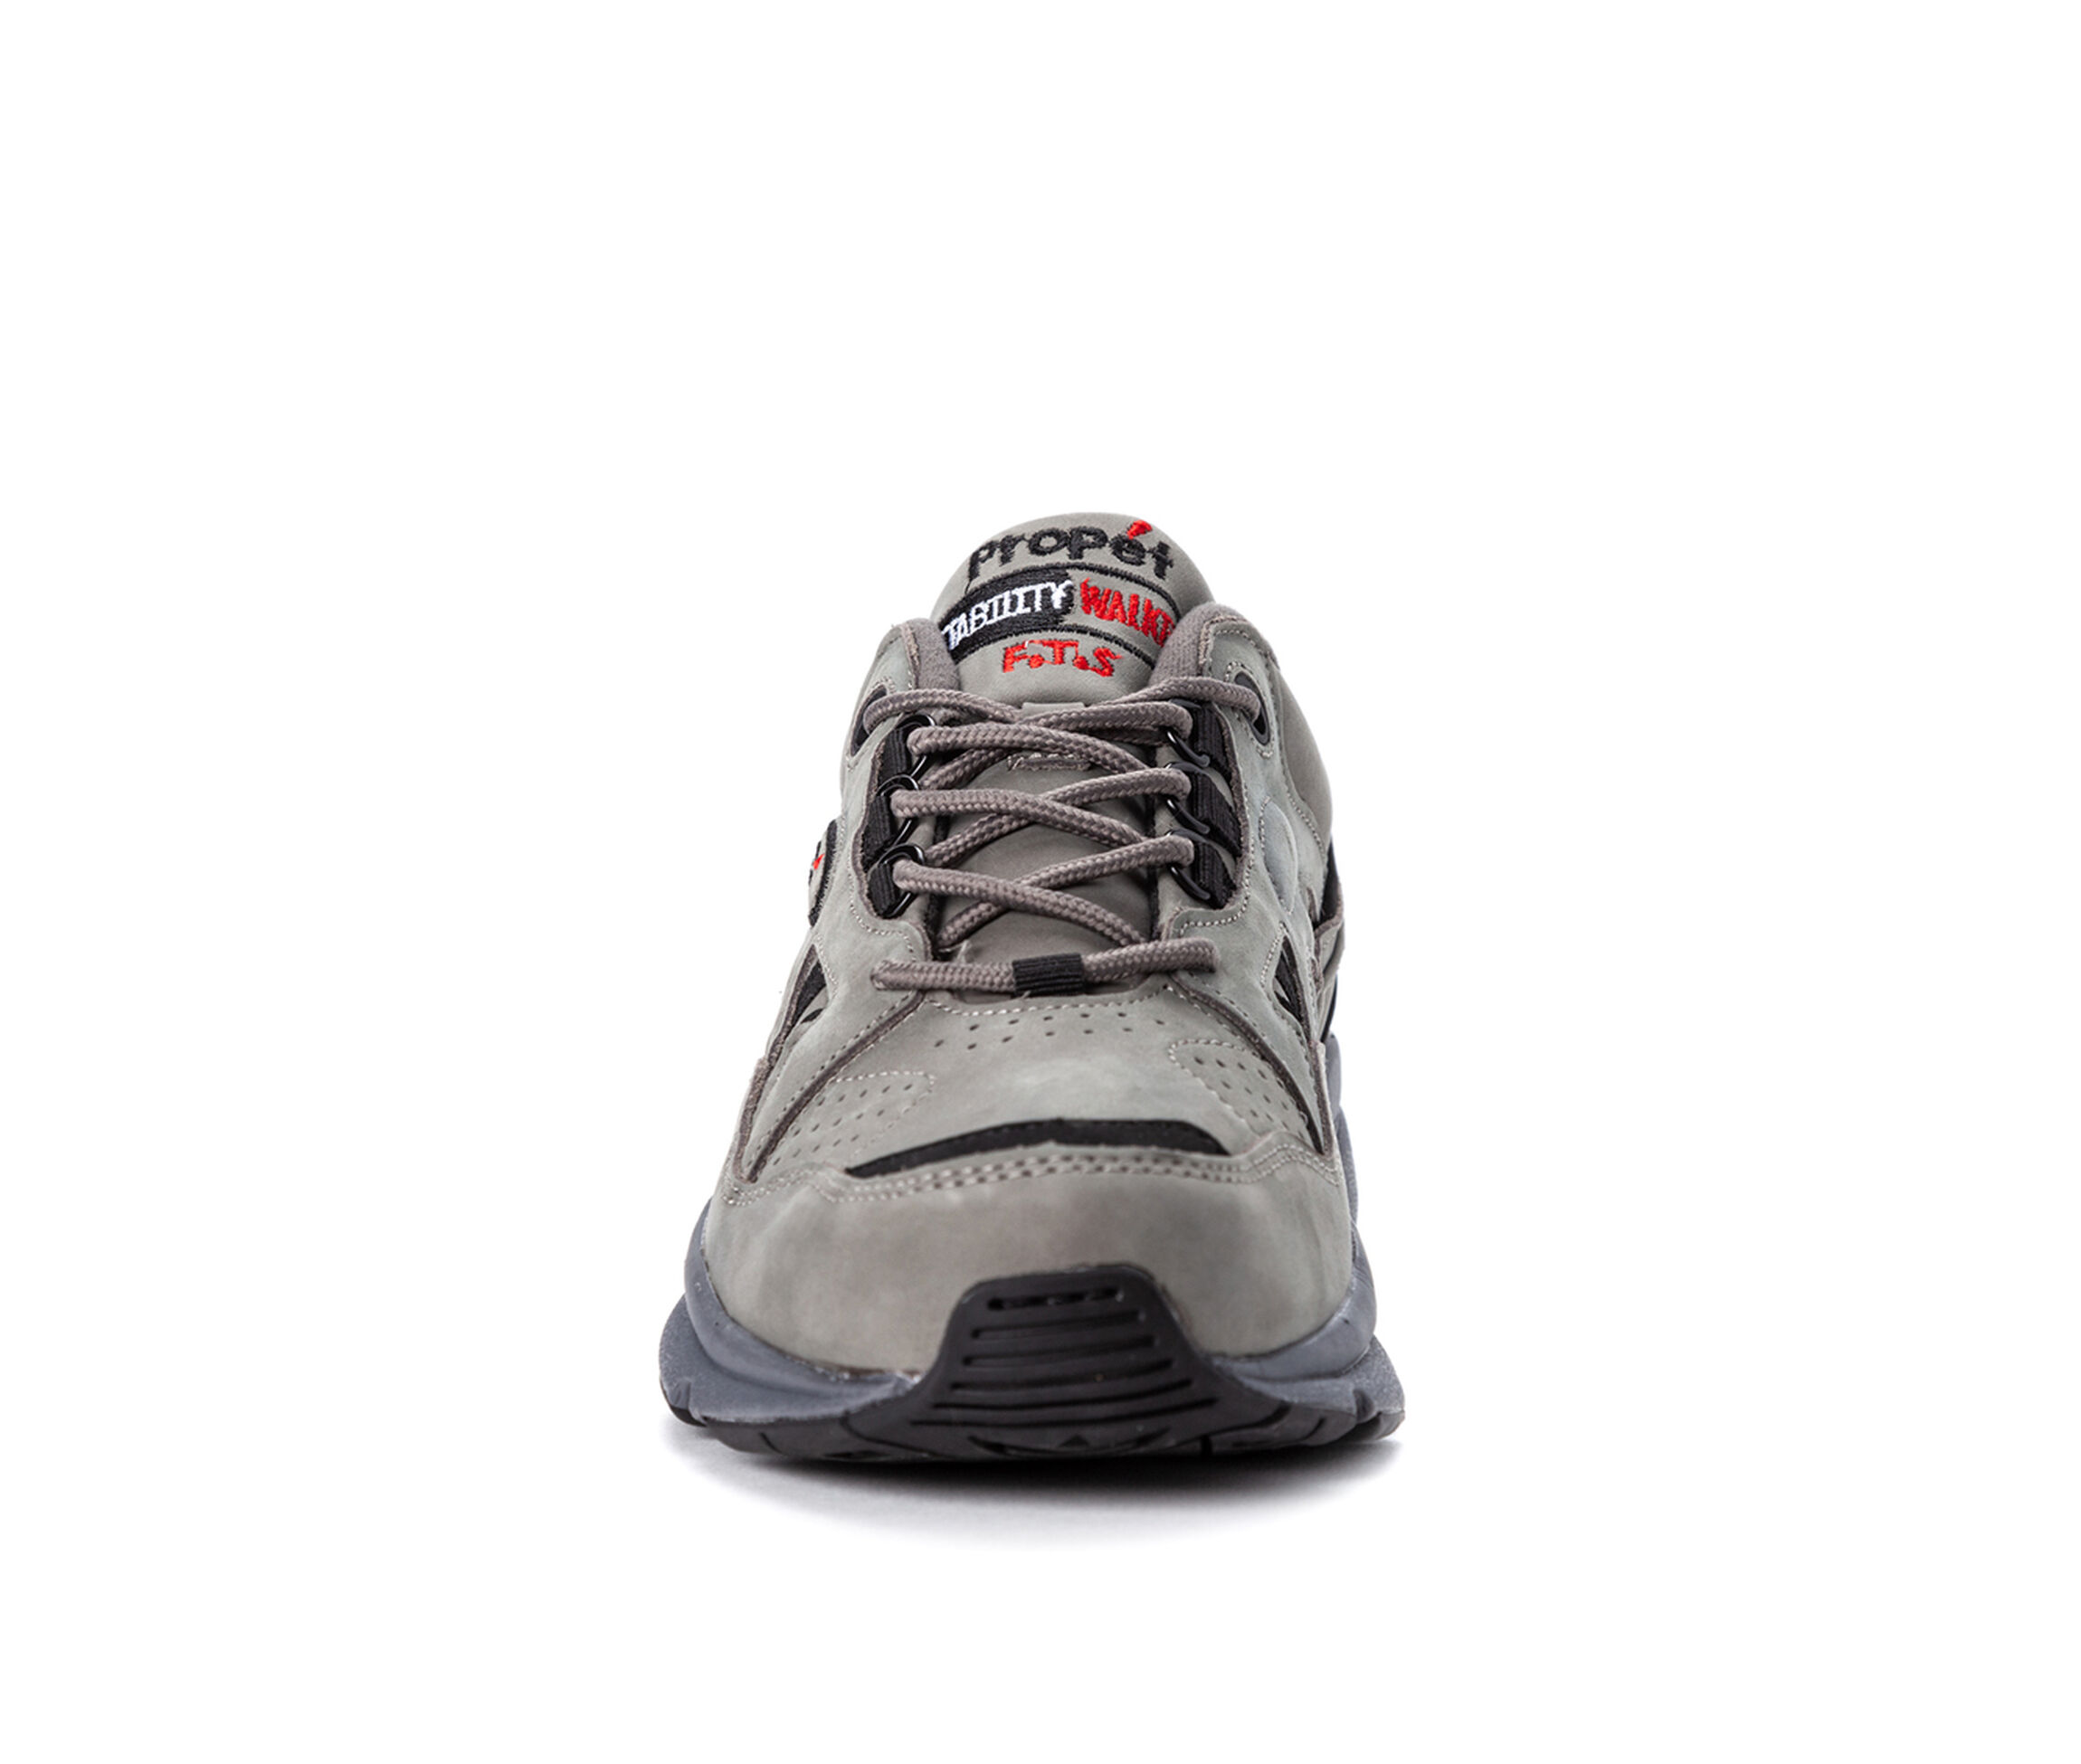 Details about   Propét Men's Propet Walker Le Walking Shoe Choose SZ/color 